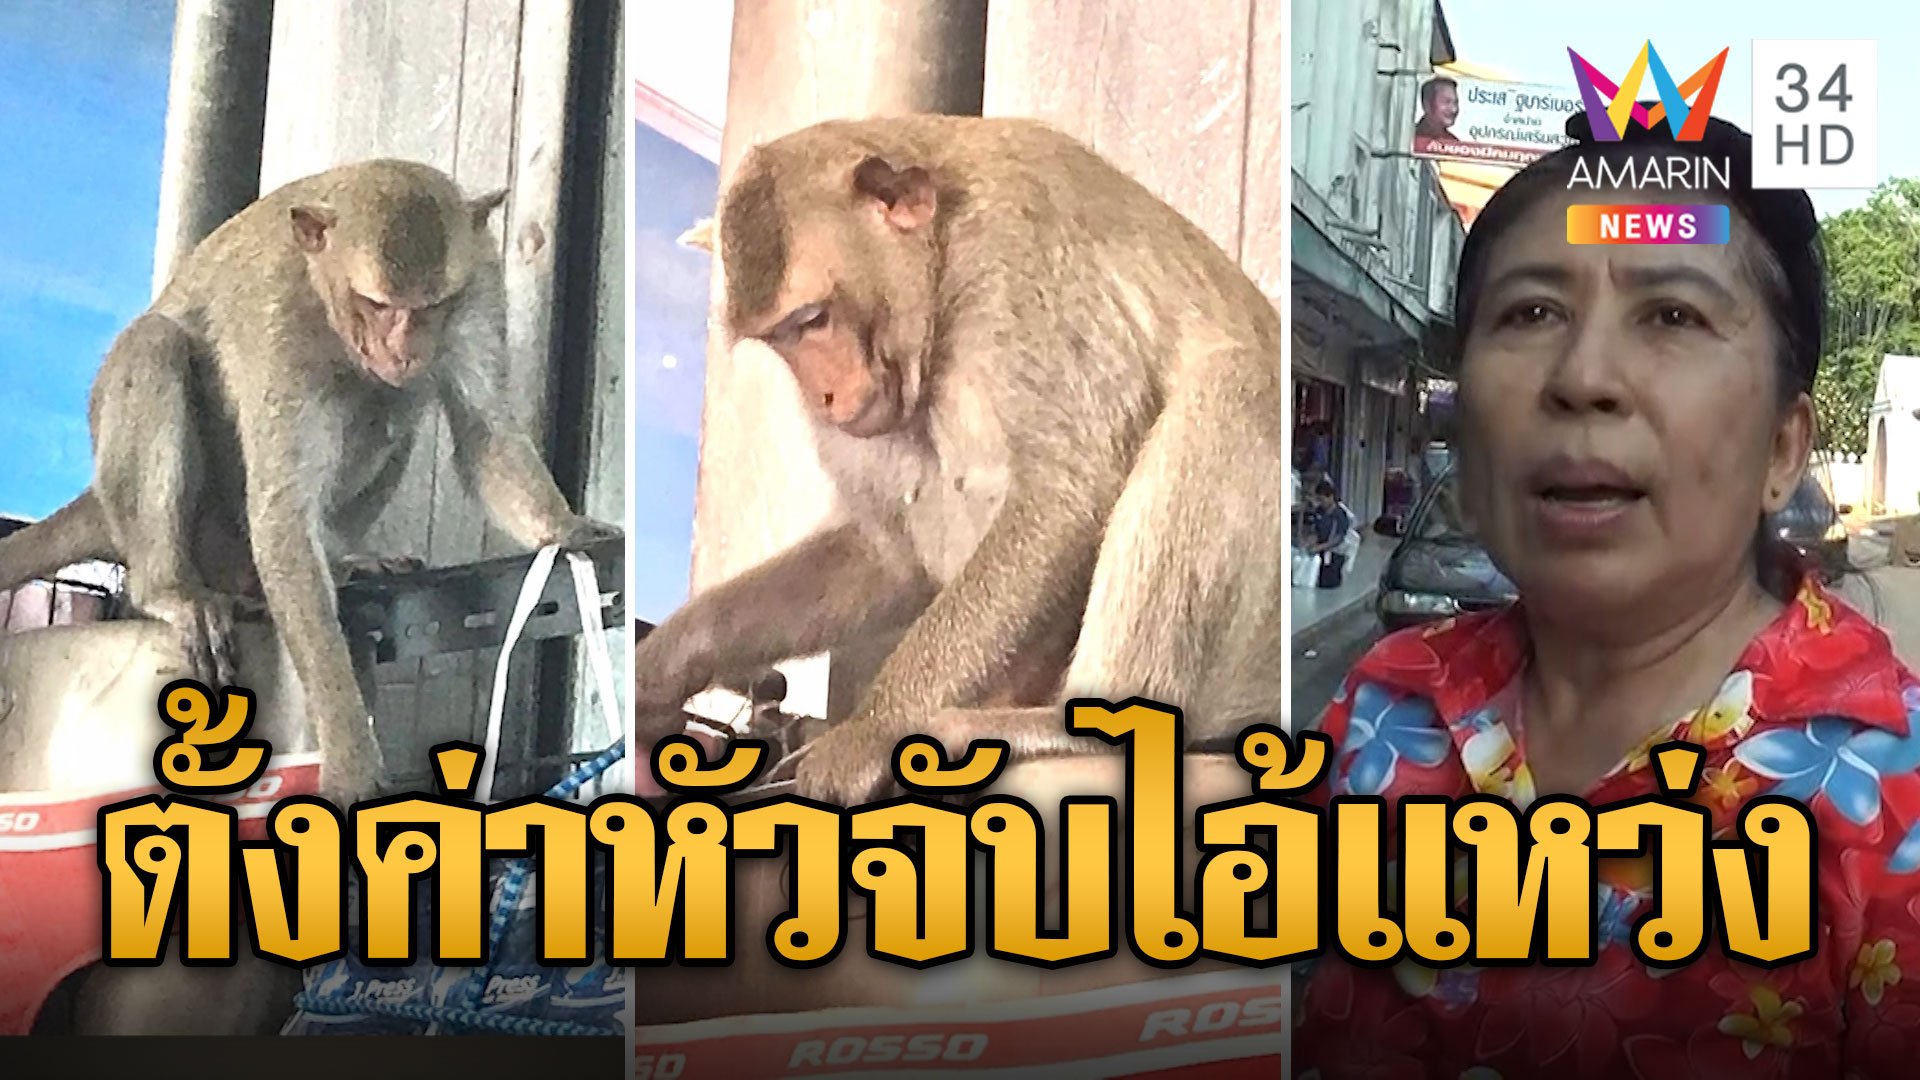 ชาวบ้านสุดทน ตั้งค่าหัวจับ "ไอ้แหว่ง" ลิงหื่นขโมยชุดชั้นใน | ข่าวเที่ยงอมรินทร์ | 31 มี.ค. 67 | AMARIN TVHD34